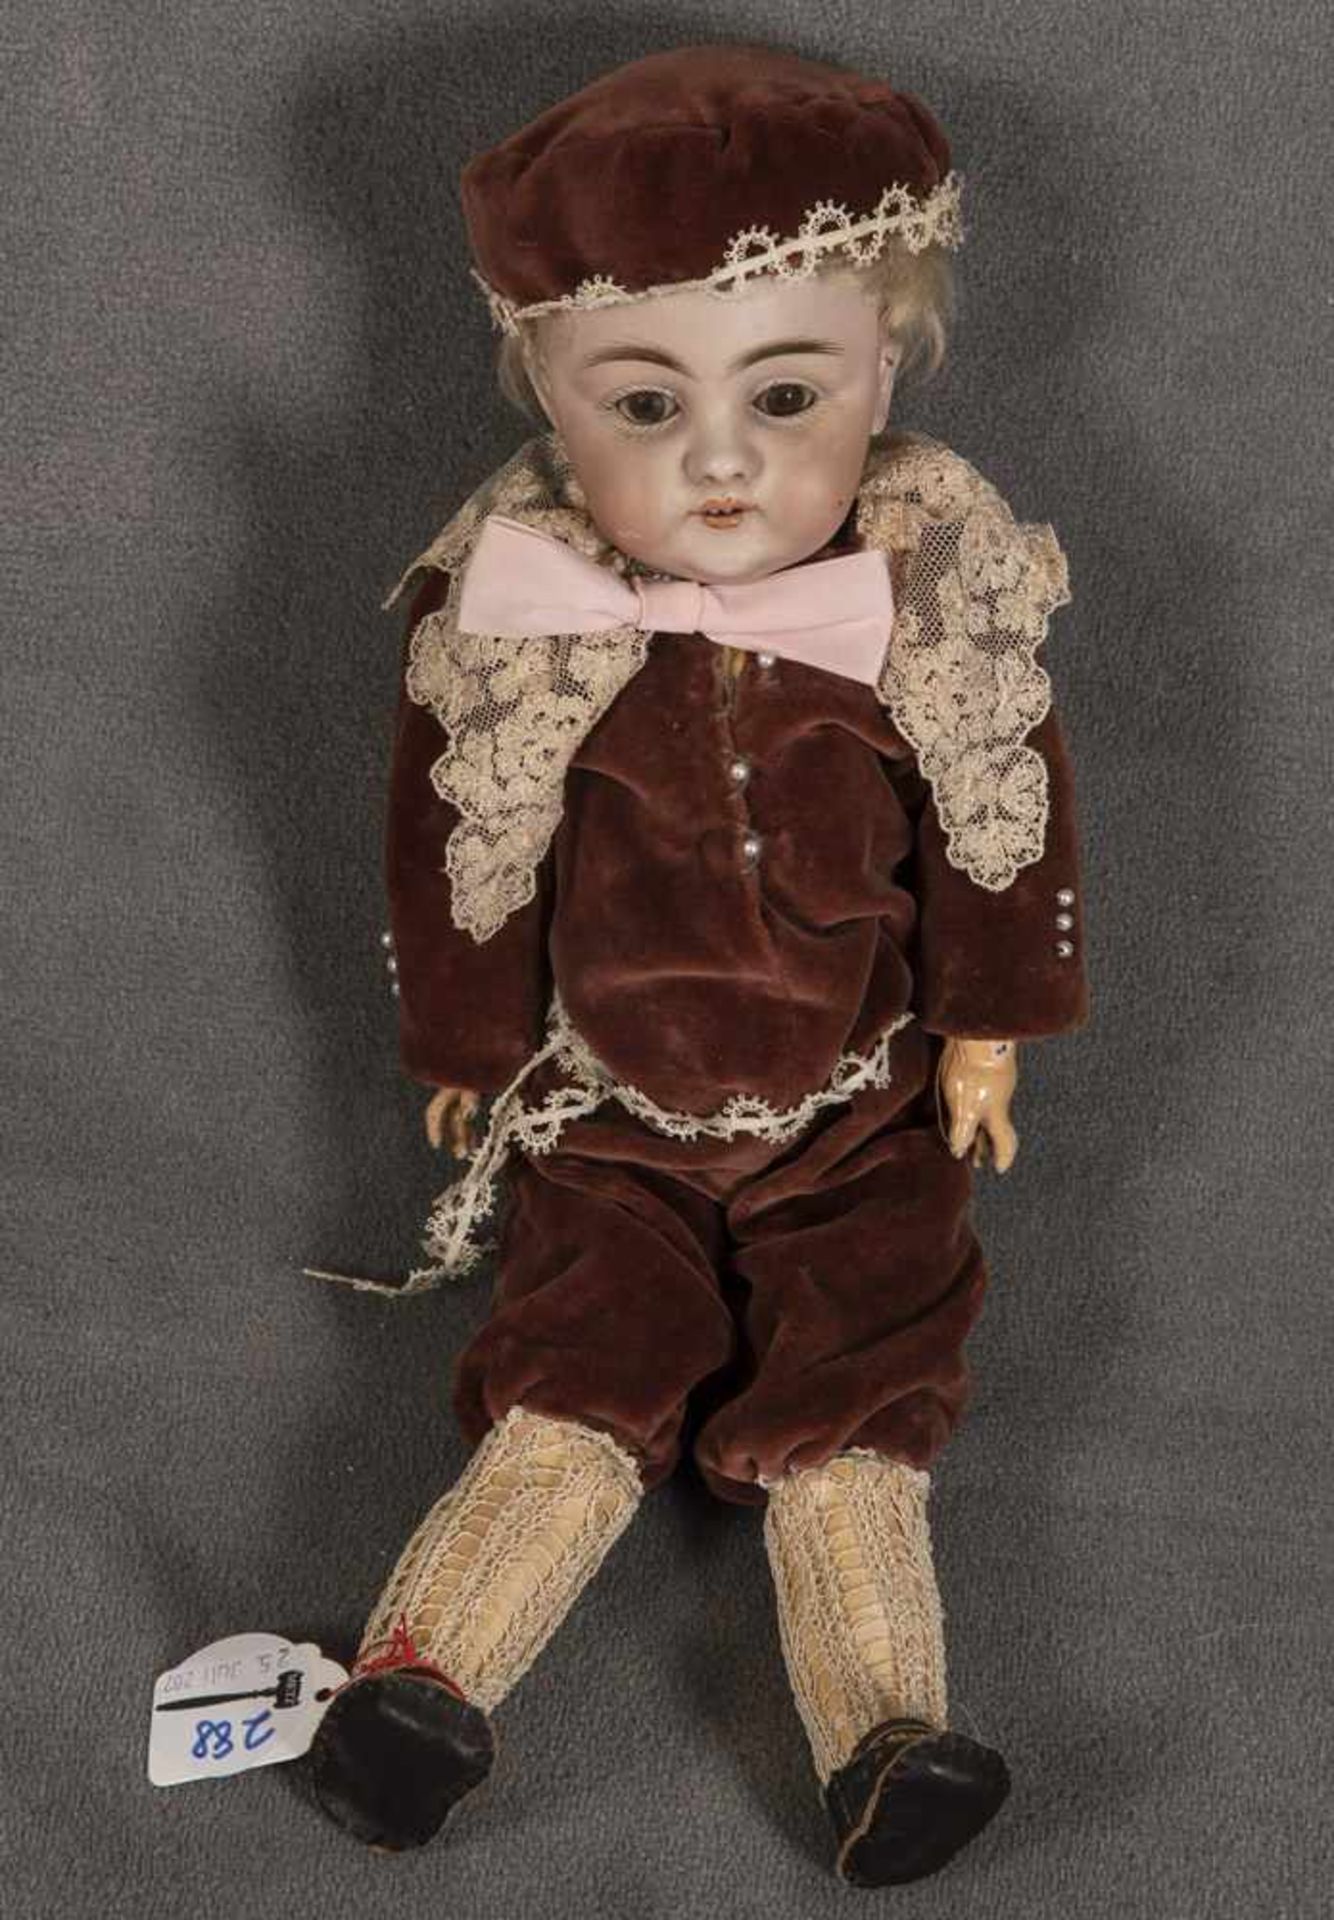 Porzellankopf-Puppe. Deutsch um 1920. Mit offenem Mund, Schlafaugen und Echthaar-Perücke;